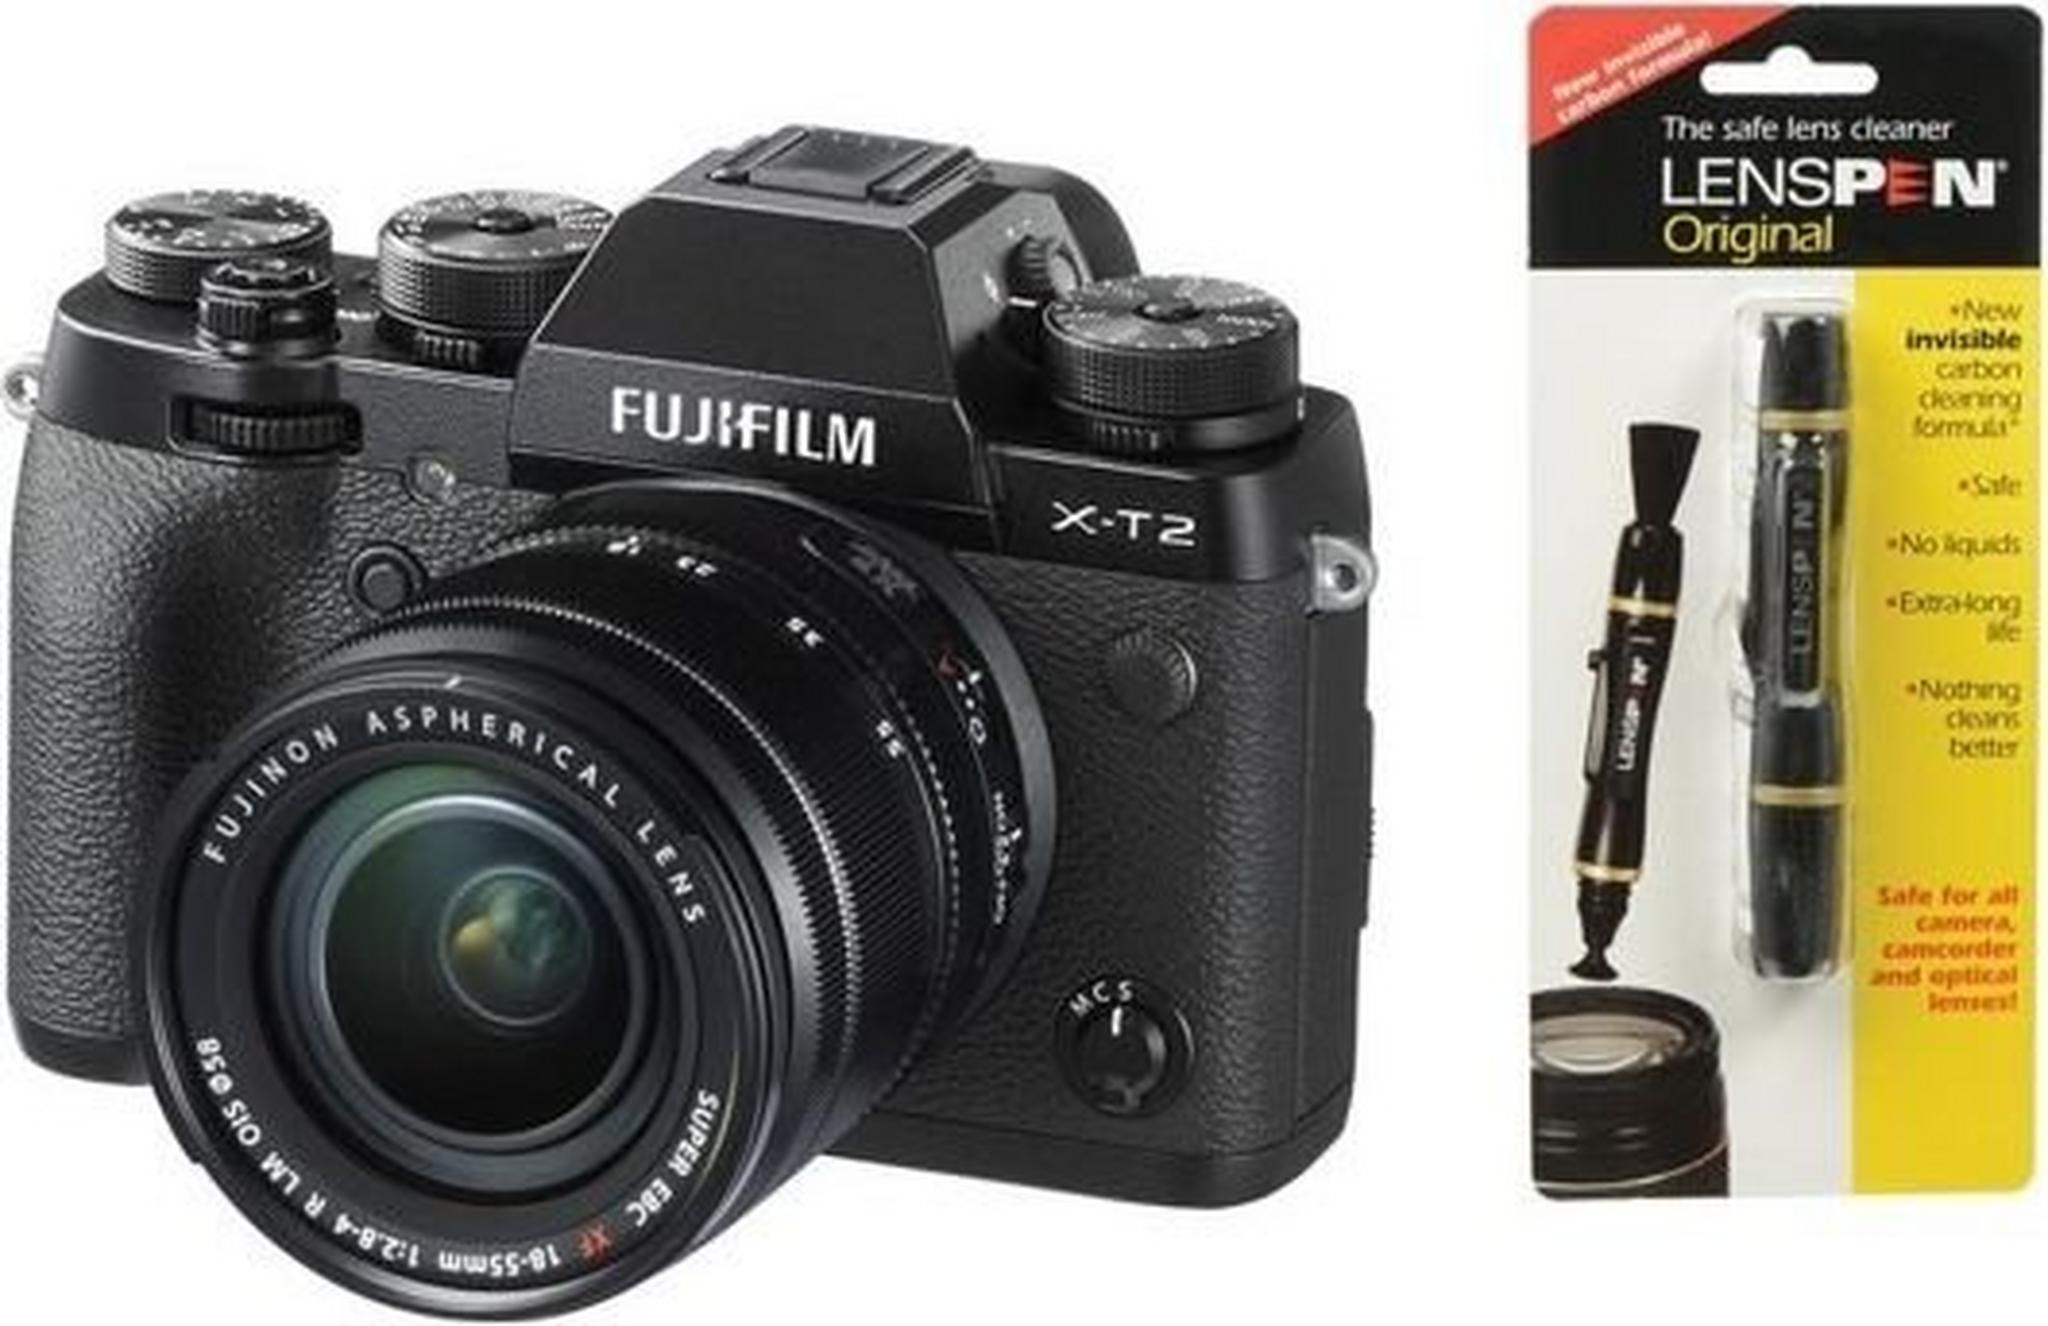 Fujifilm X-T2 Mirrorless Digital Camera with 18-55mm Lens + Fuji LensPen Lens Cleaner